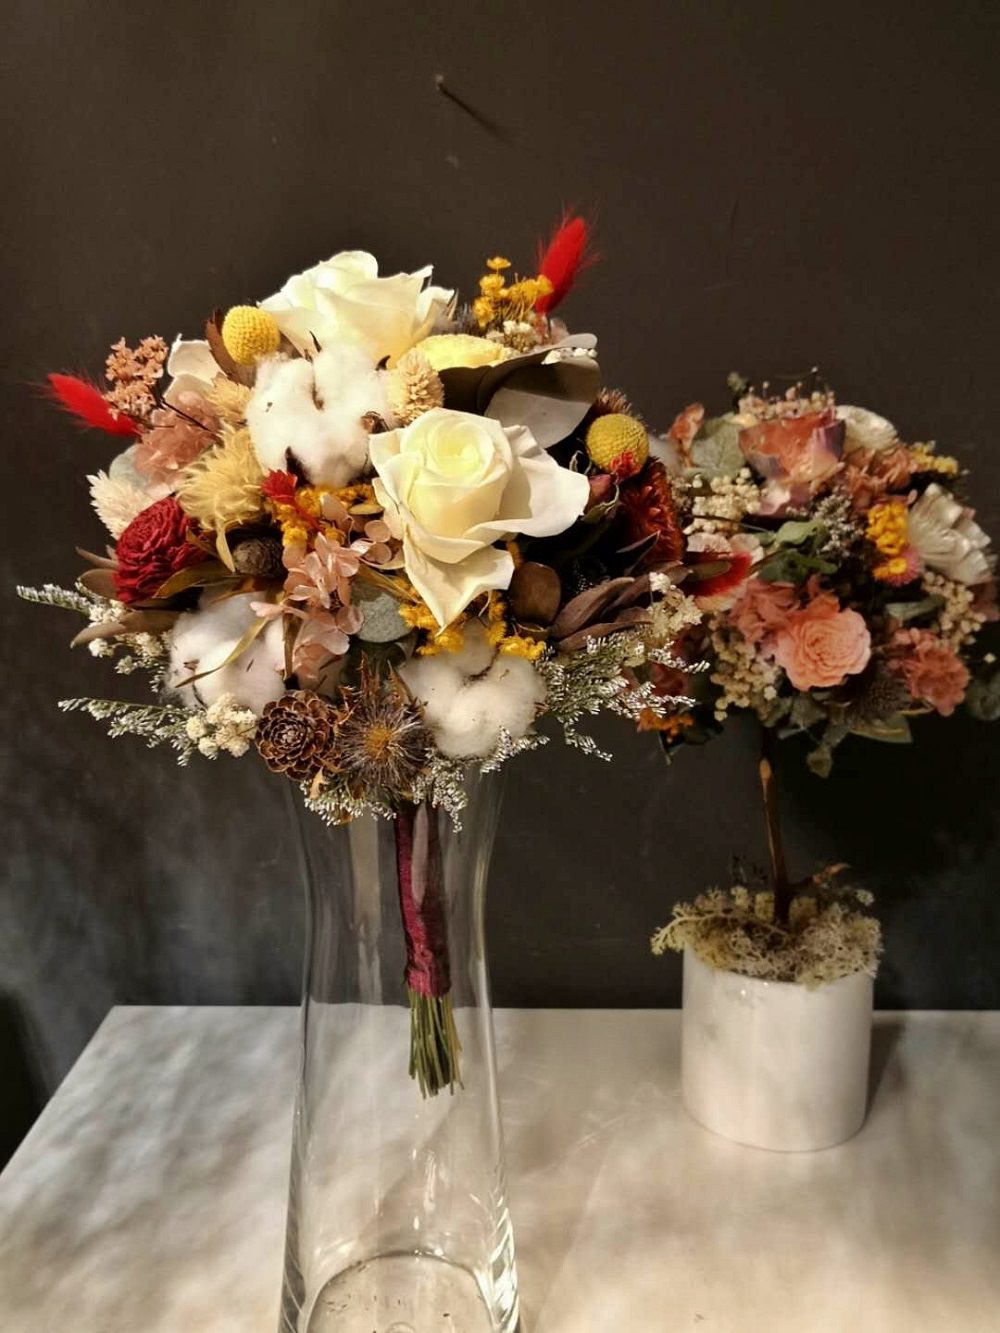 其他地方看到的永生花、乾燥花設計的花藝品，設計和作工都不如「嚐花閣」的細緻和優美，但價格都比「嚐花閣」來得貴！